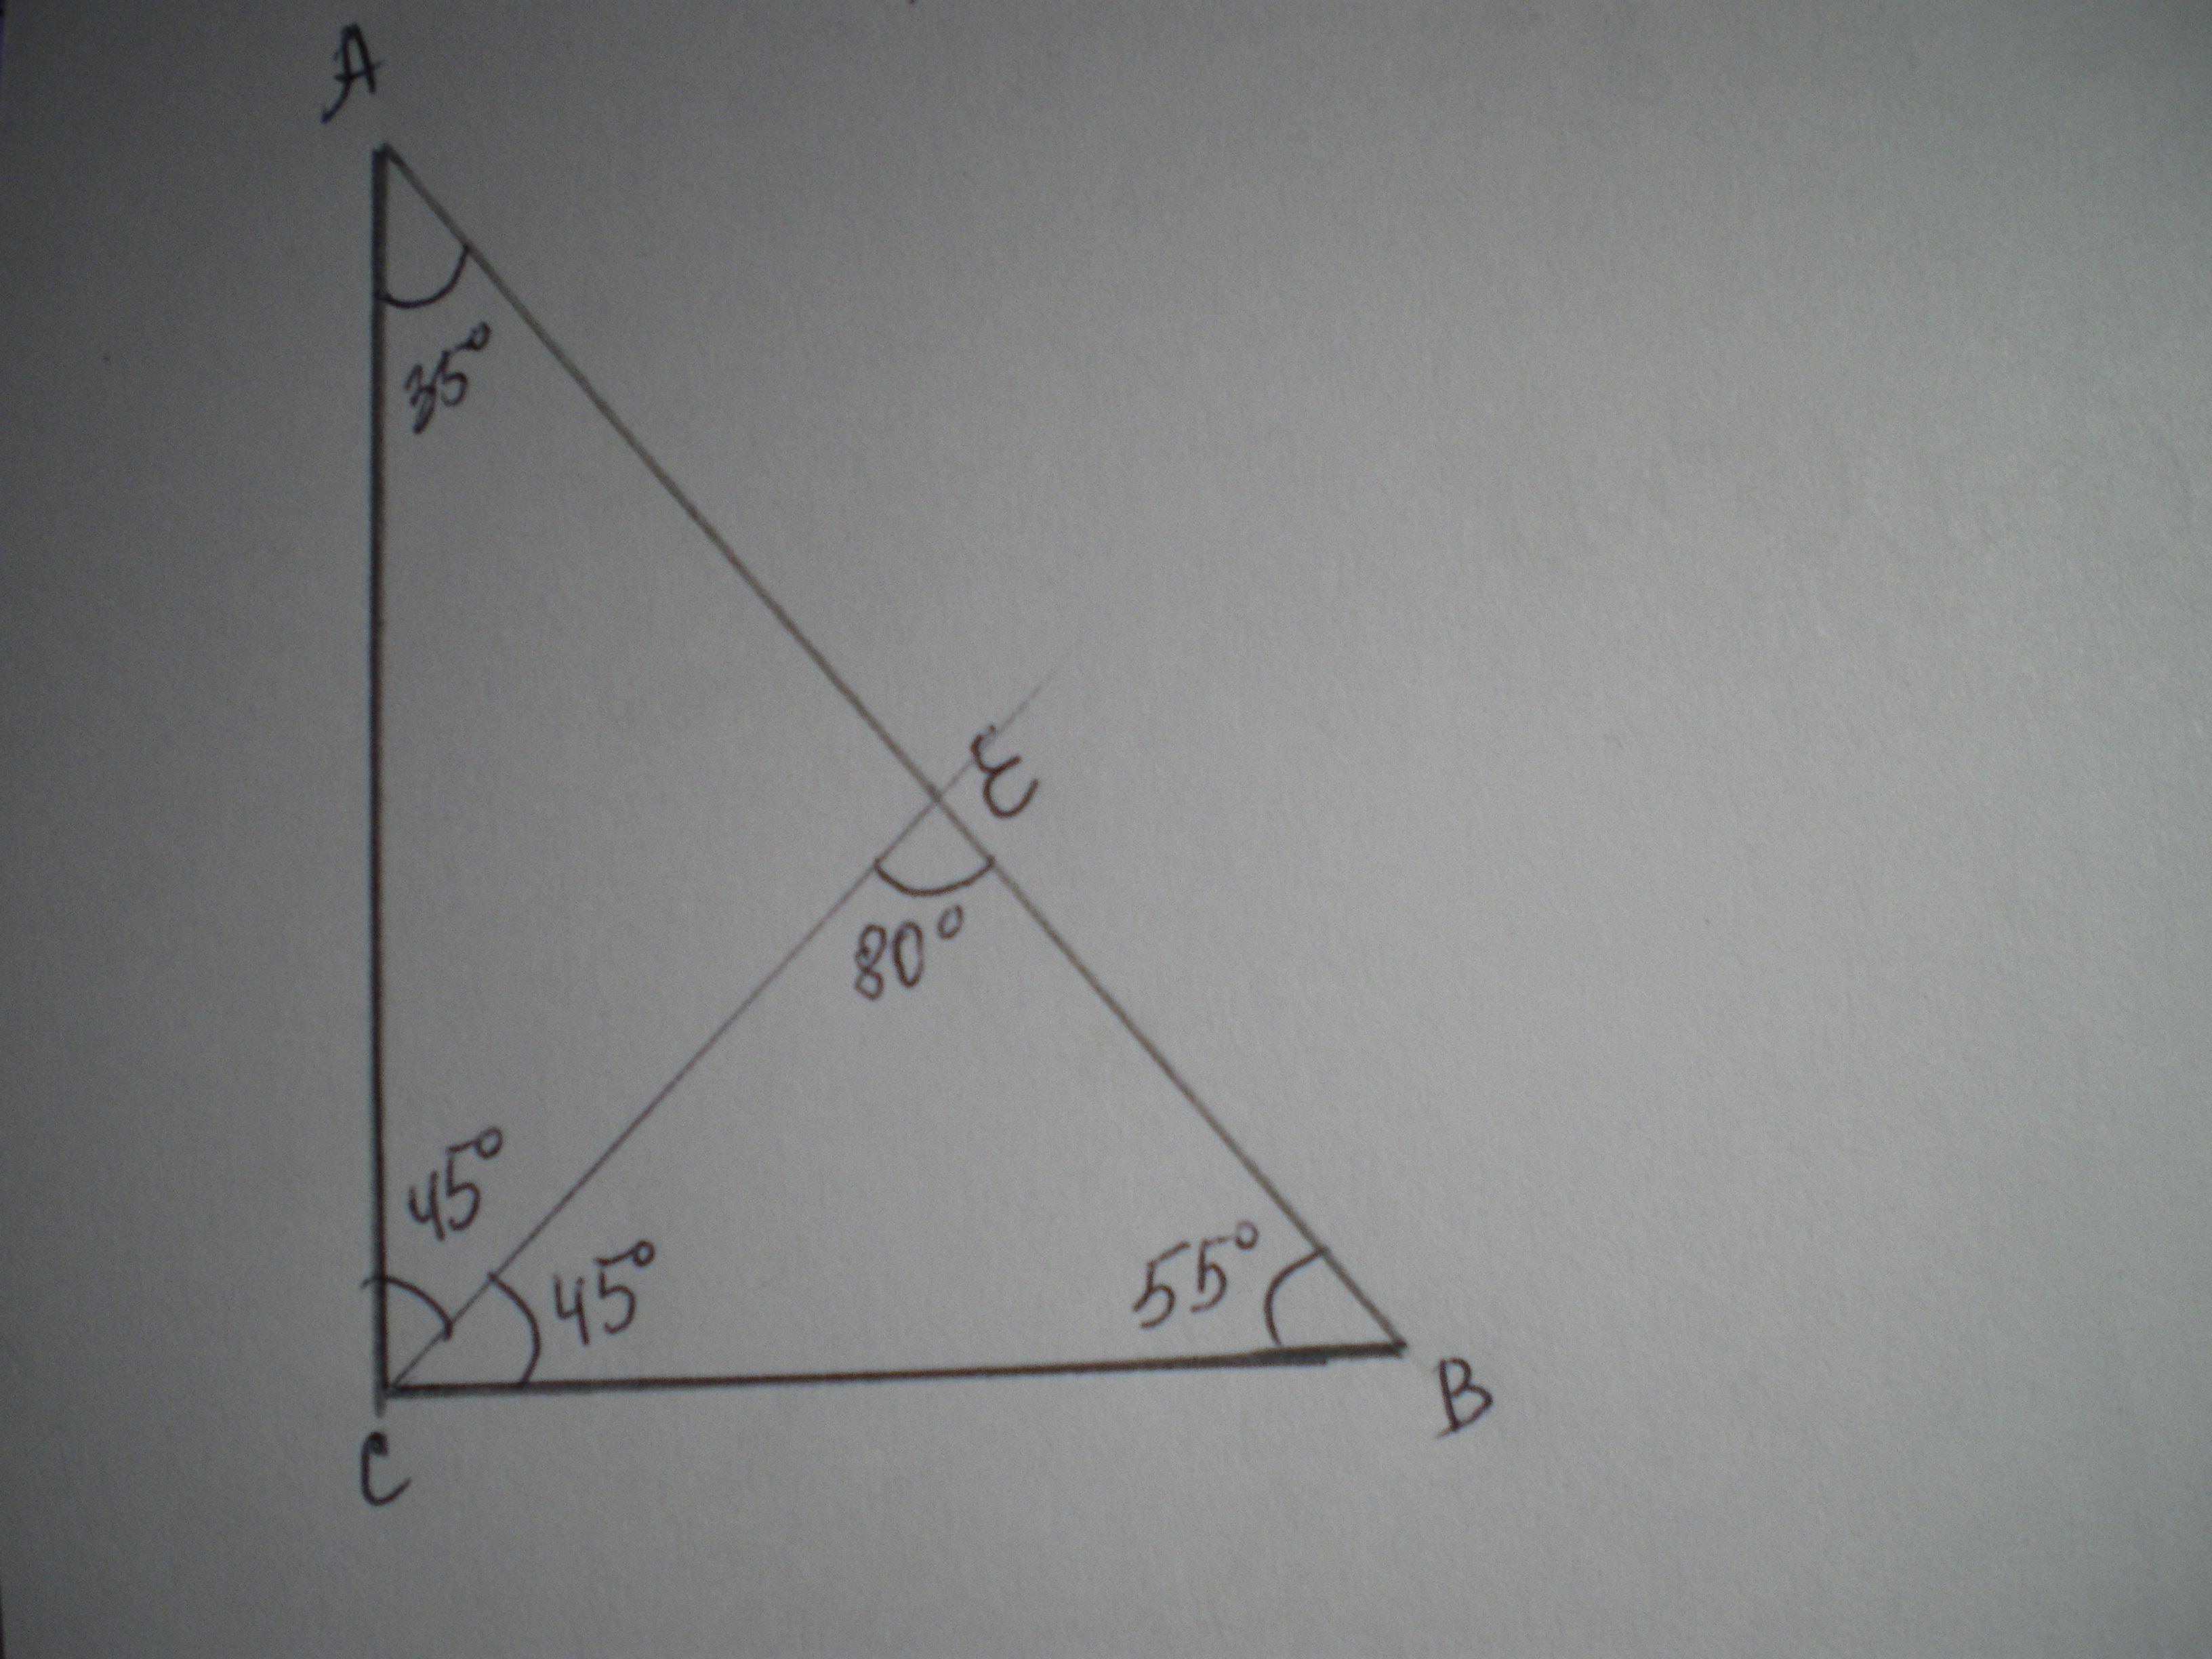 В прямоугольном треугольнике дсе с прямым. Биссектриса угла в прямоугольном треугольнике. Биссектриса в прямоуг треуг. Угол 80 градусов. Биссектриса из прямого угла прямоугольного треугольника.